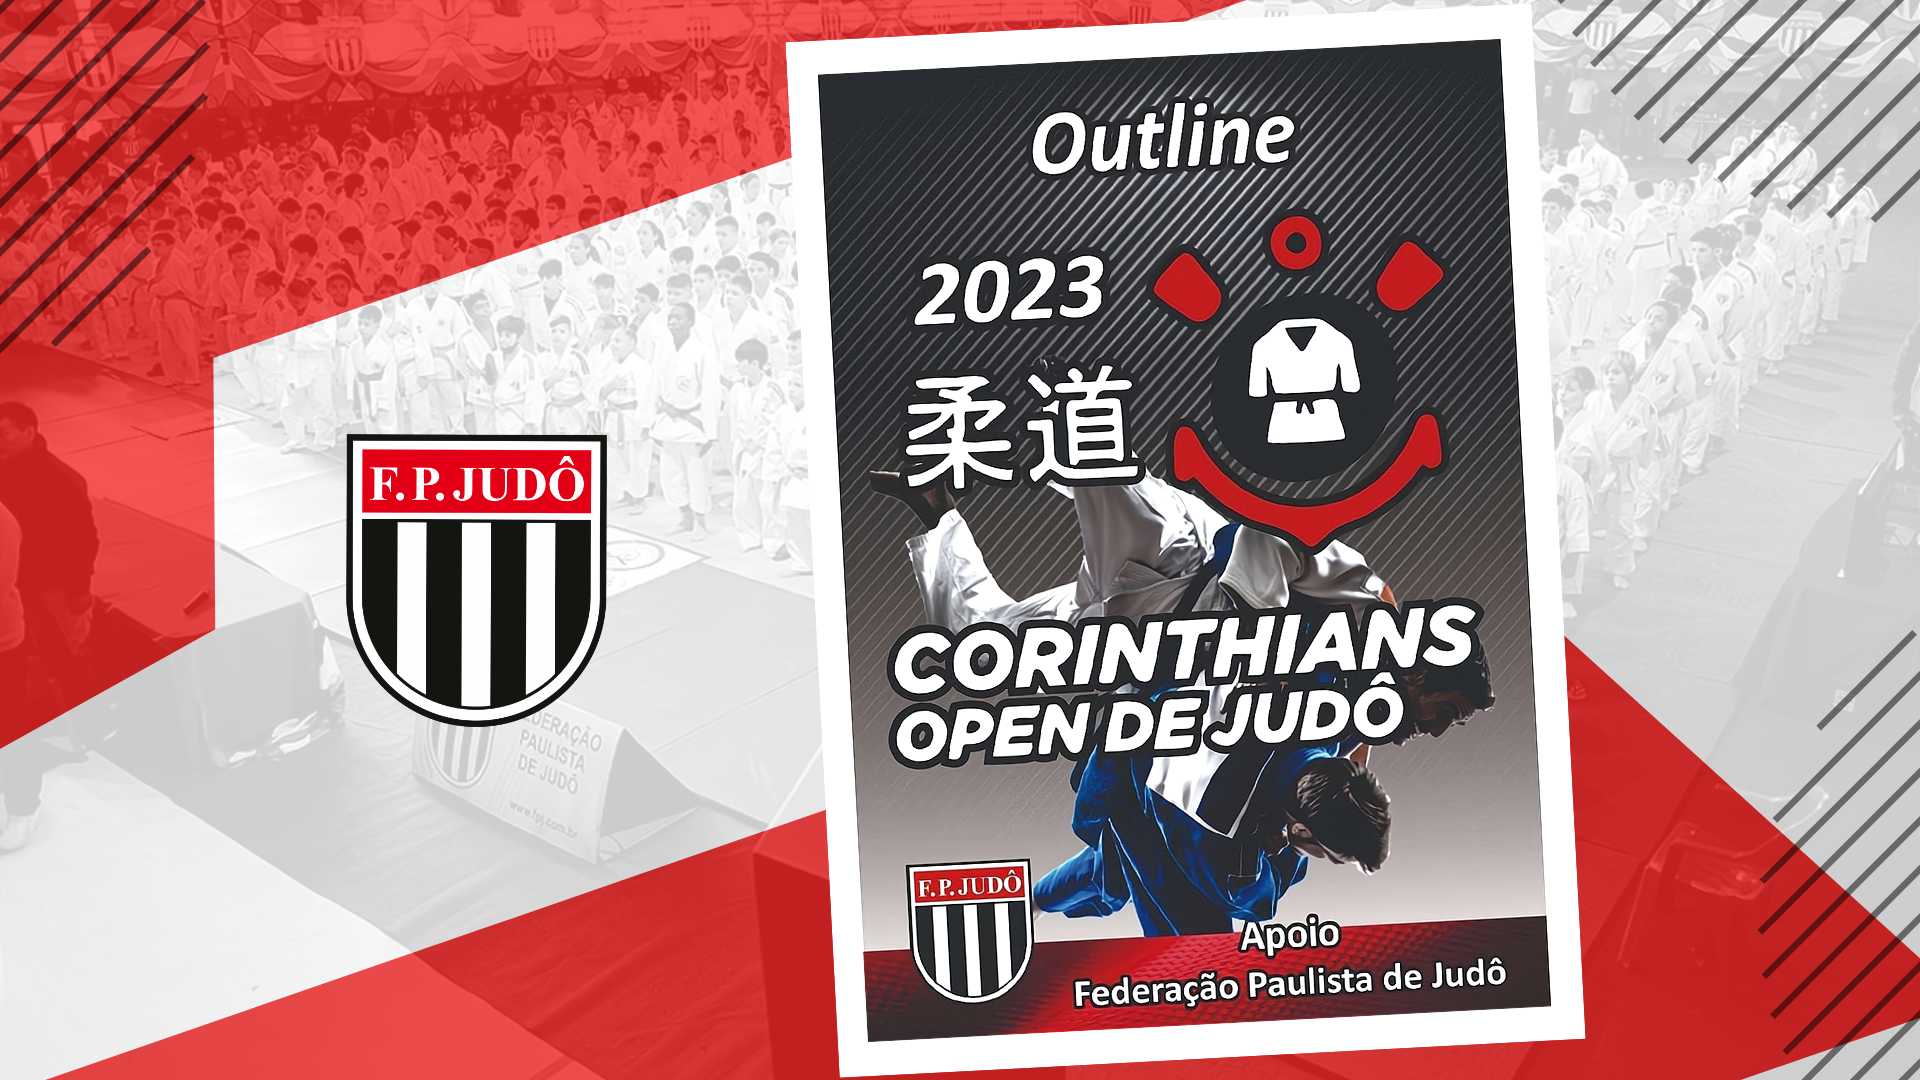 Open Corinthians outline (wide)